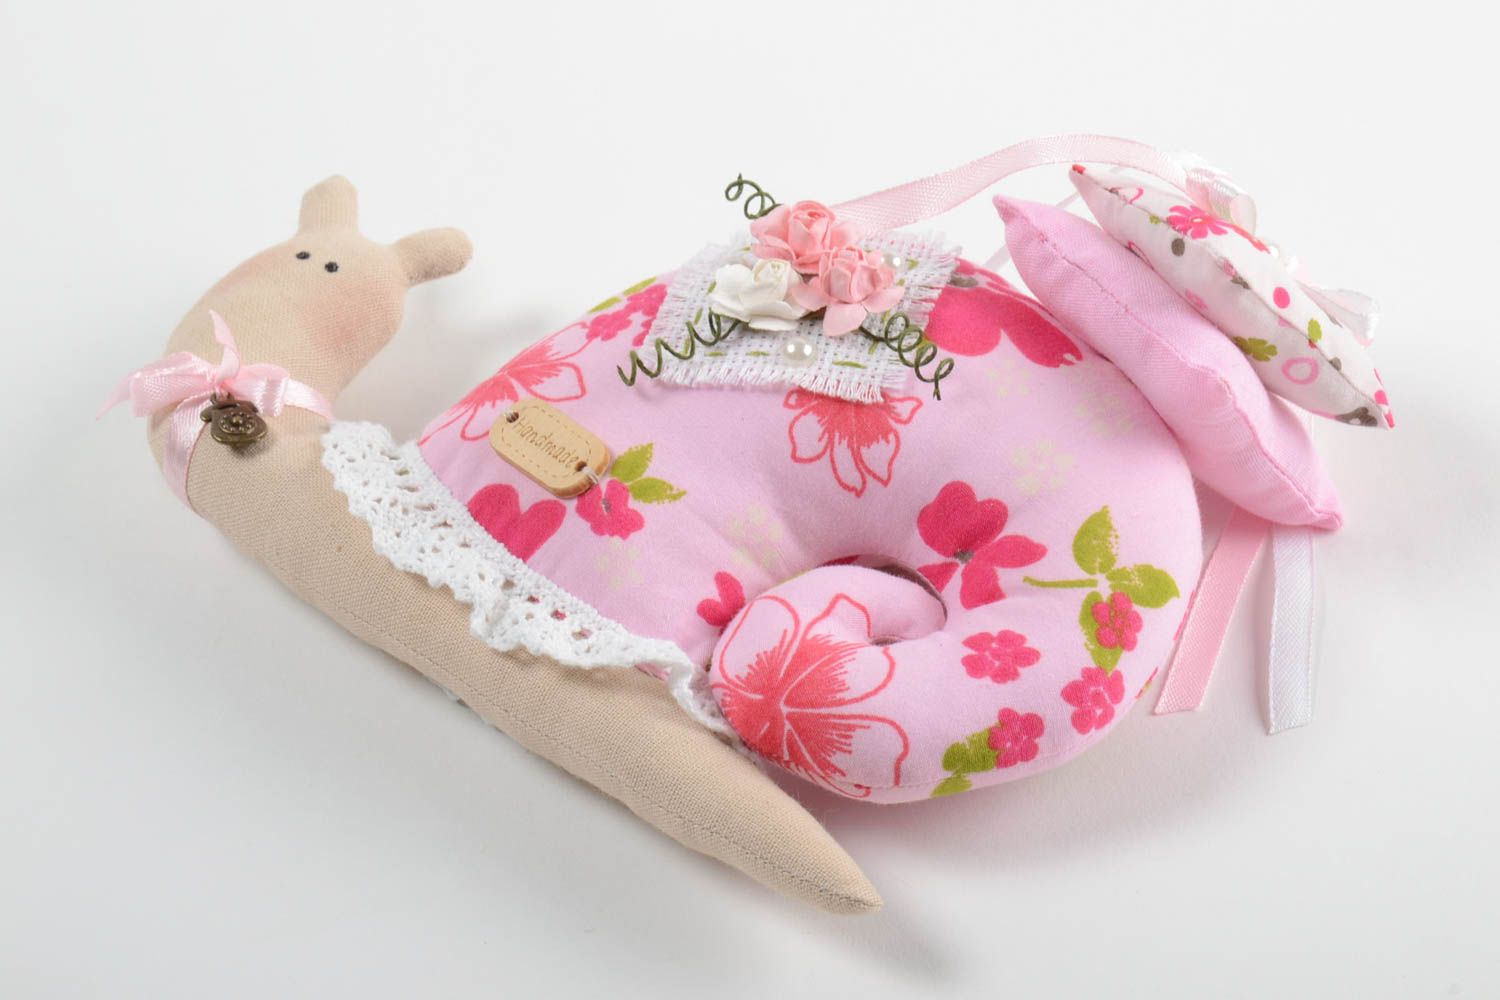 Интерьерная игрушка улитка розовая из хлопка для декора дома ручной работы фото 2